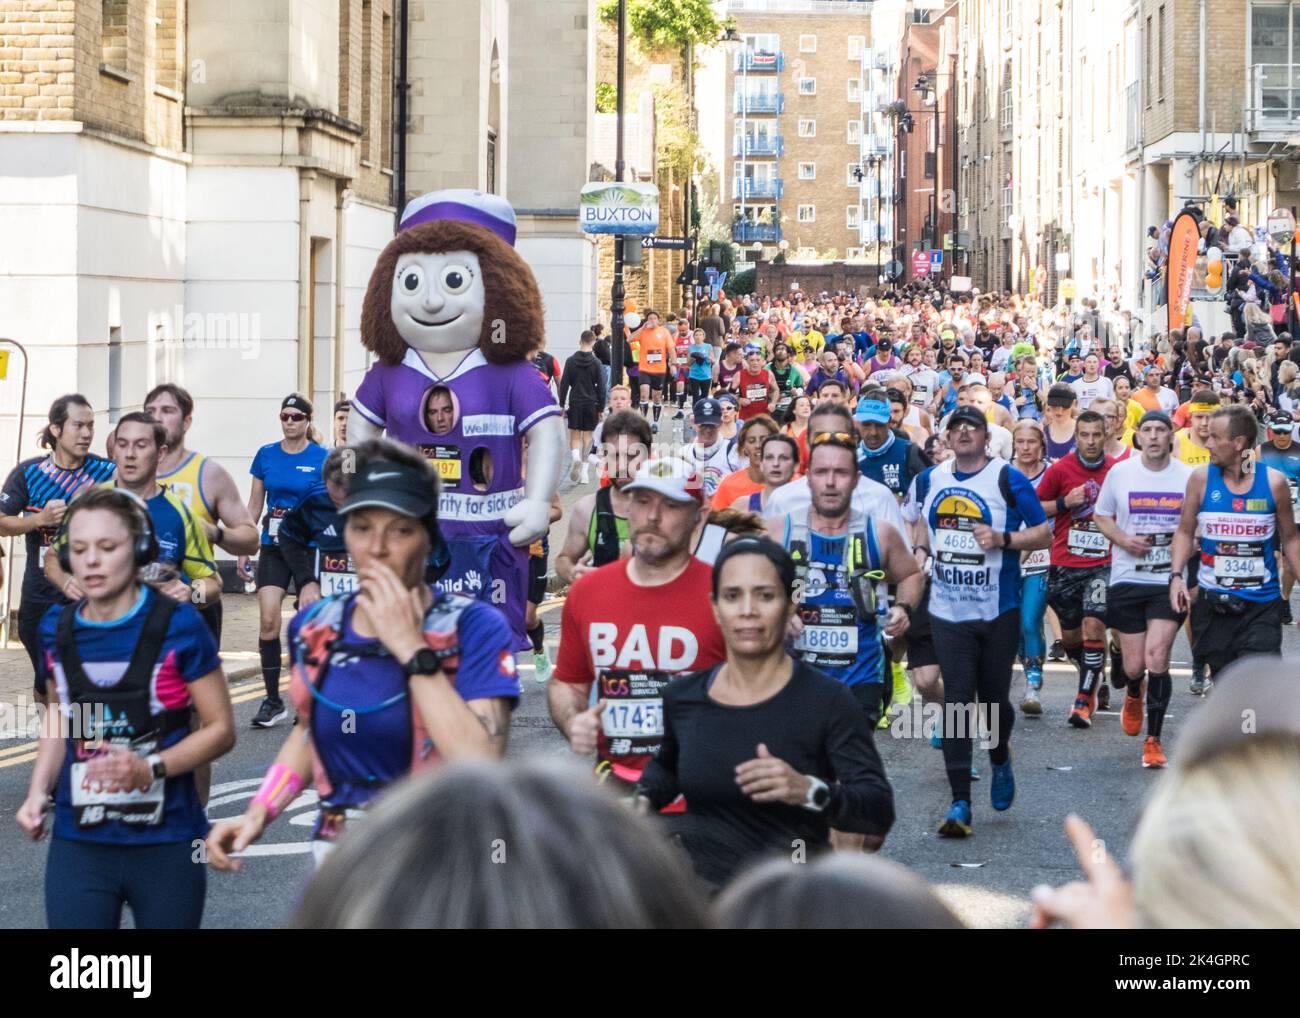 Déguisement de fantaisie Giant Nurse Runner dans le Marathon de Londres 2022 à Narrow Street dans l'est de Londres, septembre 2022, Angleterre, Royaume-Uni. Banque D'Images